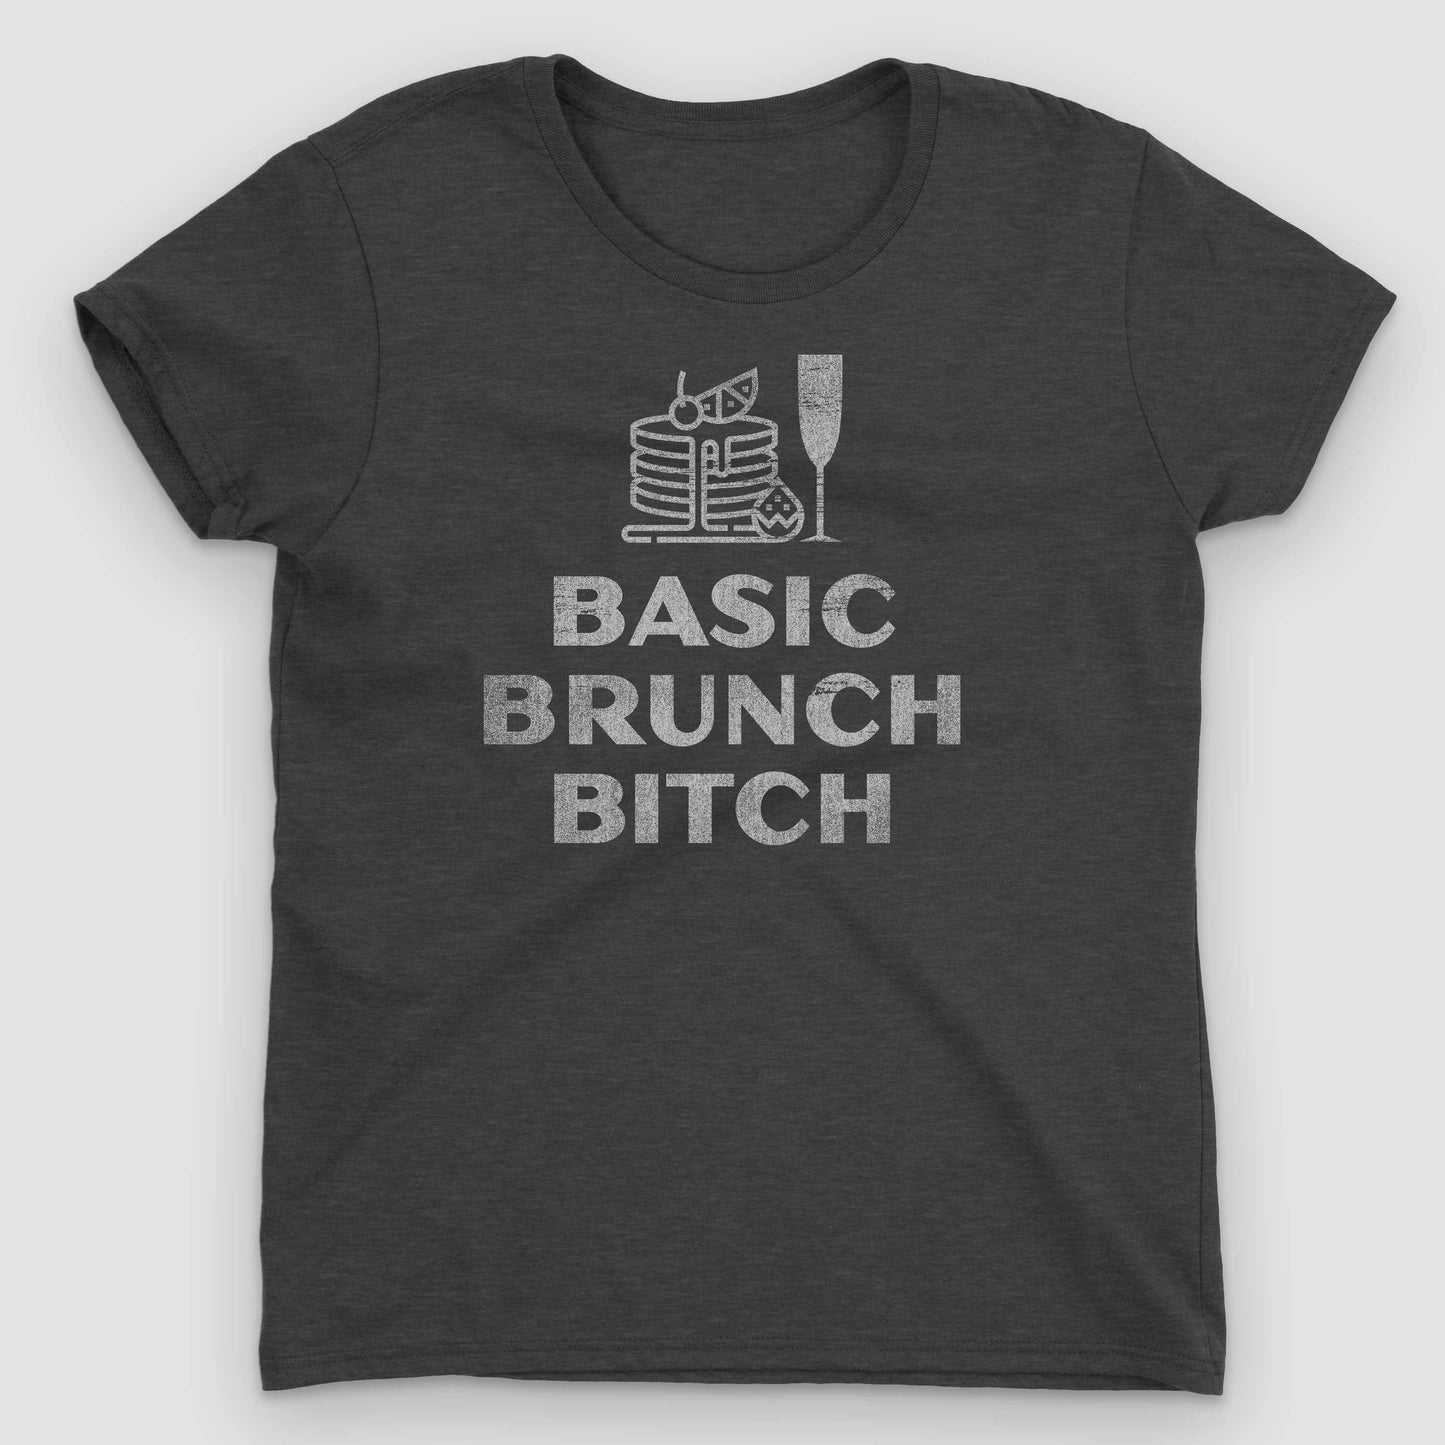 Heather Dark Grey Basic Brunch Bitch Women's Graphic T-Shirt by Snaxtime